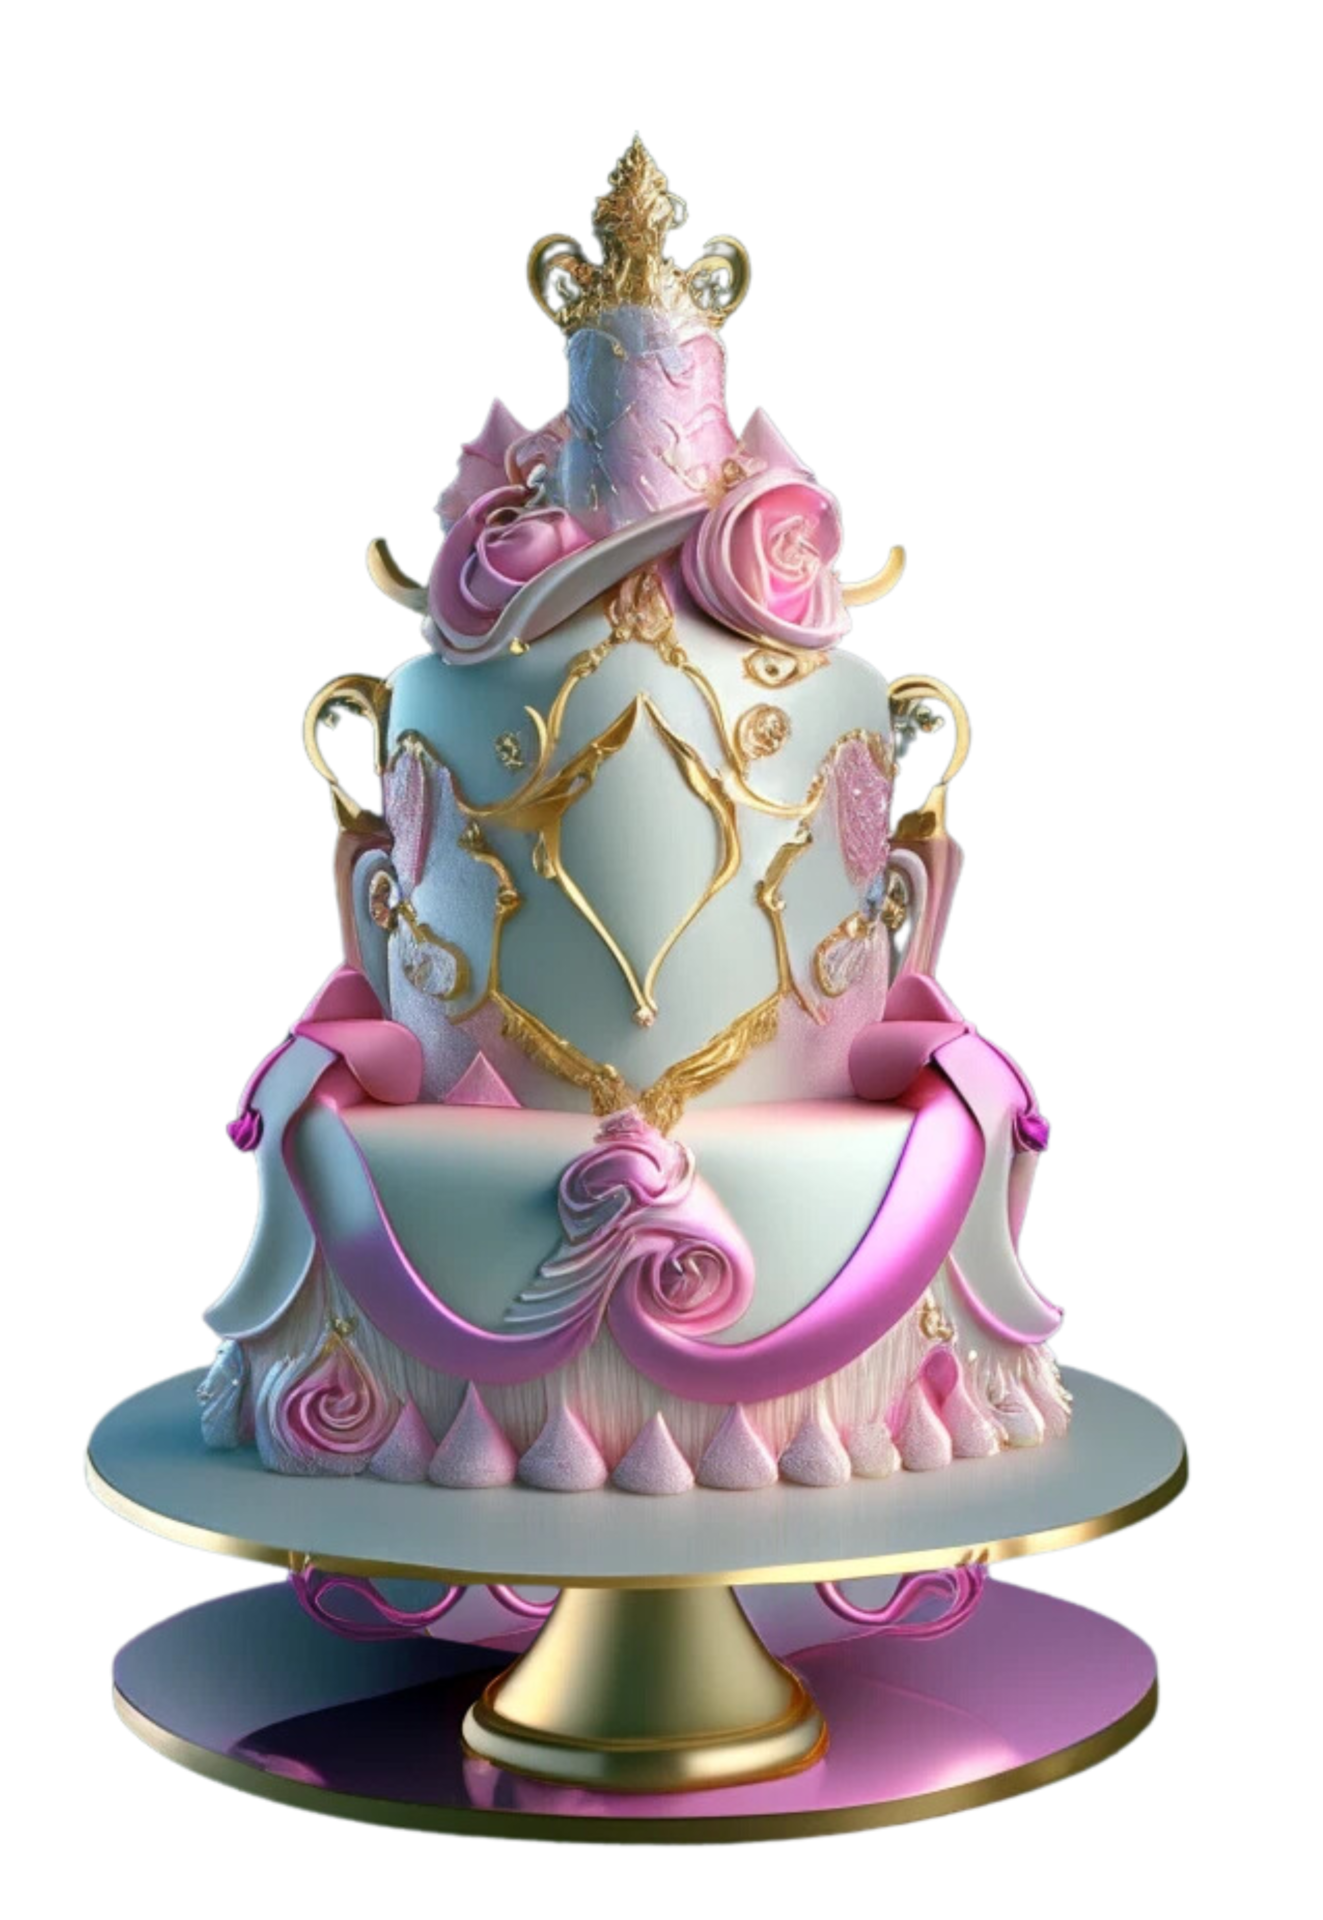 Royal Cake Designs